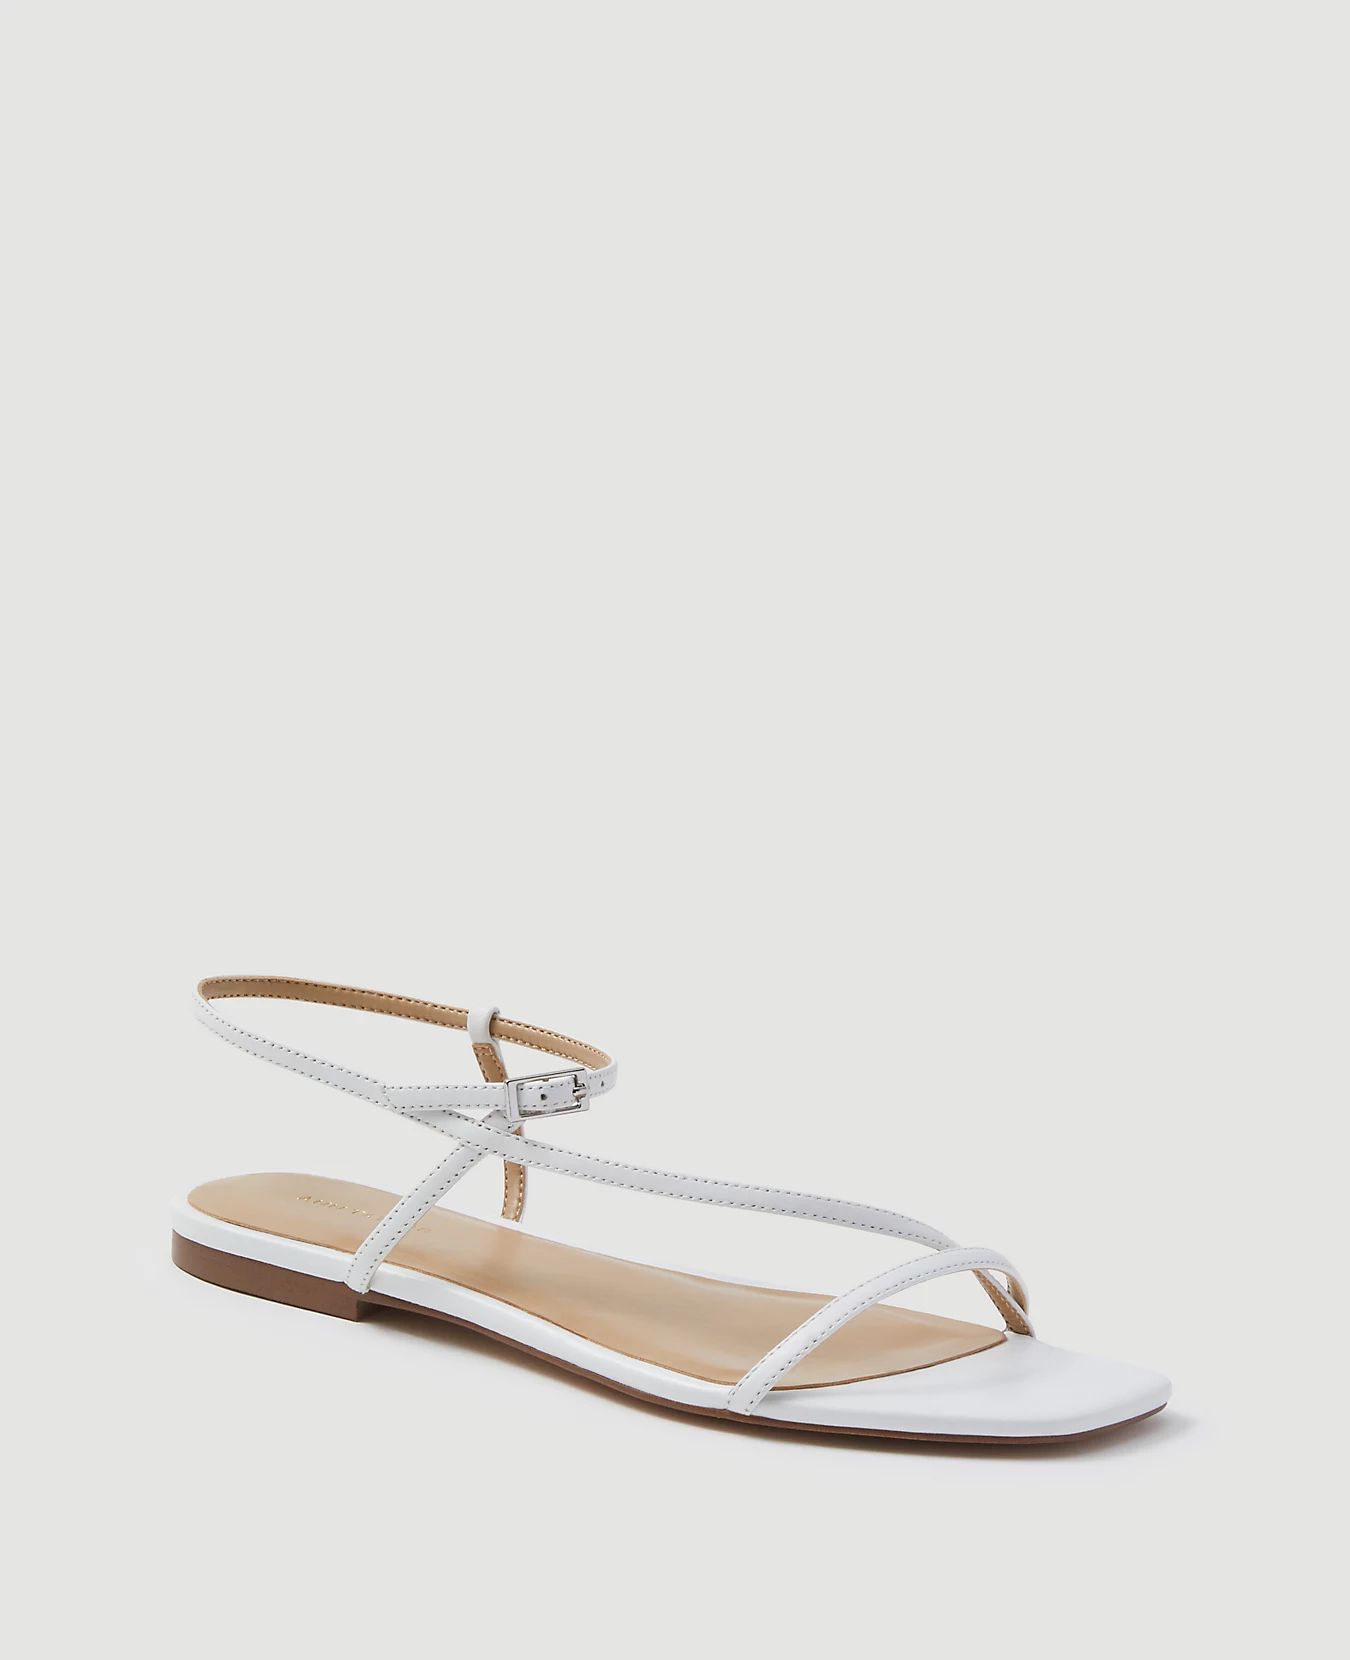 Priya Leather Strappy Sandals | Ann Taylor (US)